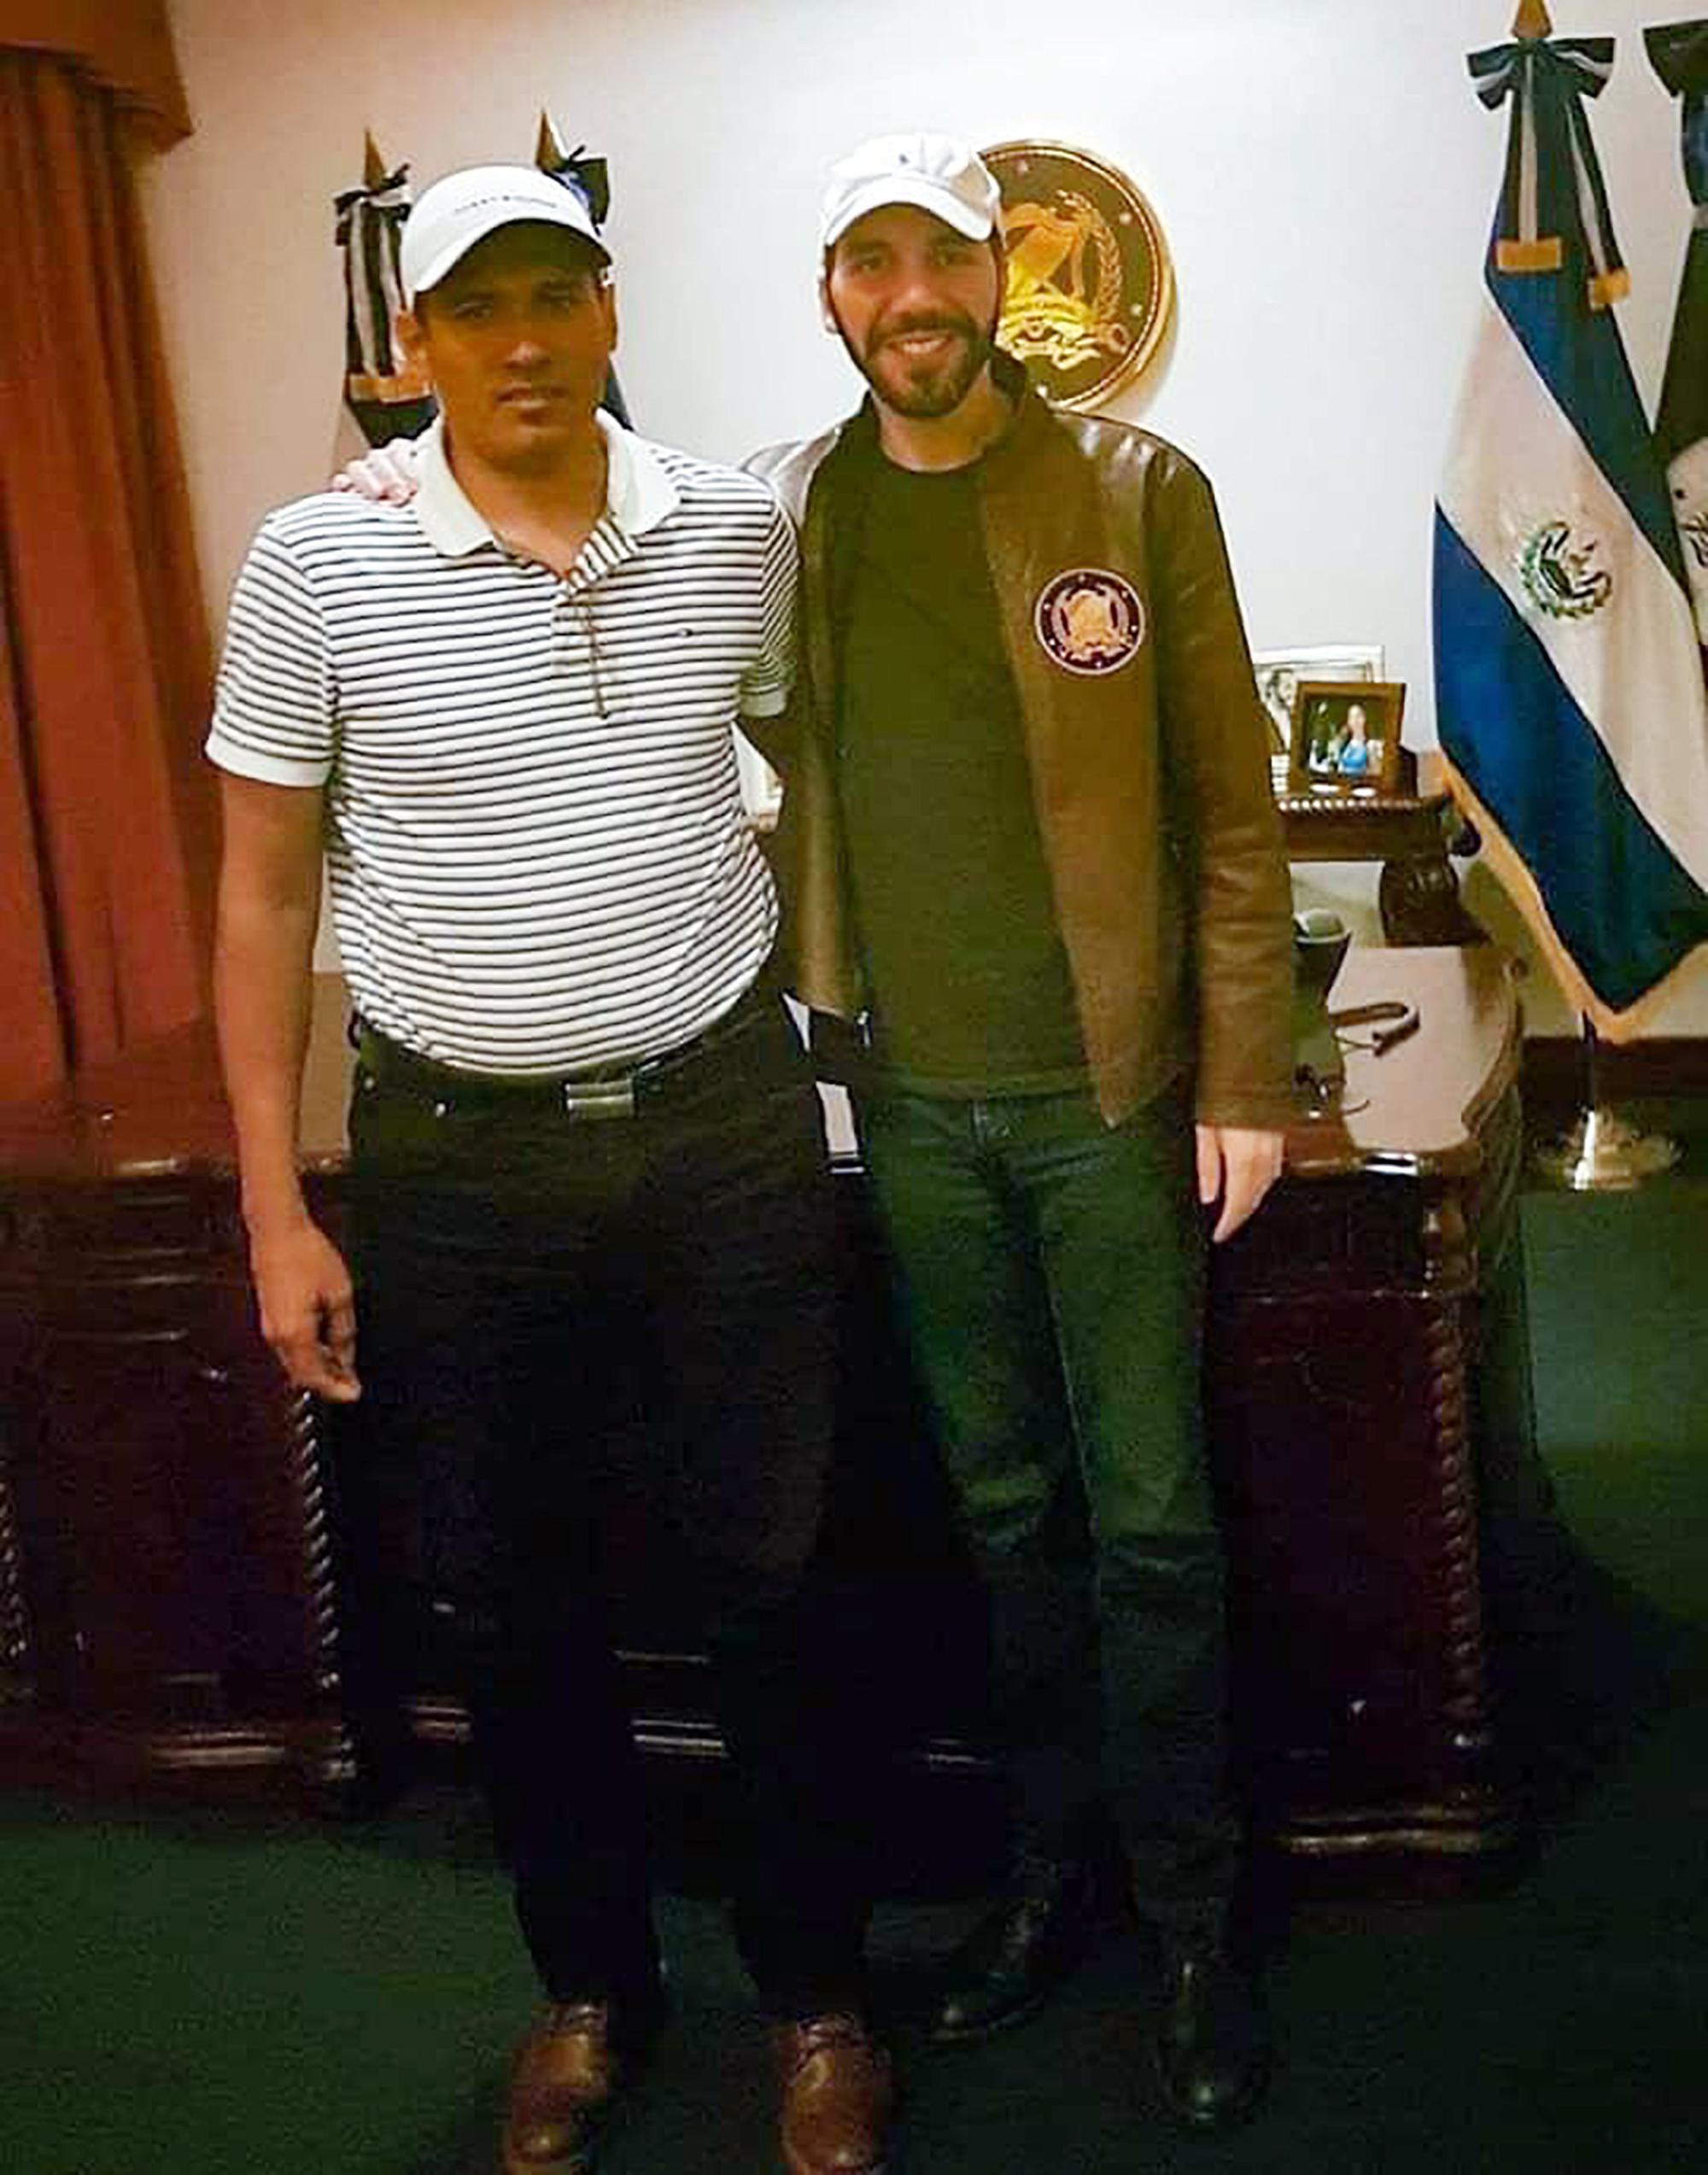 El 19 de octubre de 2017, Bladimir Barahona publicó en sus redes sociales sobre una reunión con Nayib Bukele, entonces alcalde de San Salvador, para un hermanamiento con Meanguera. Dos años después, Barahona fue uno de los alcaldes que apoyó la candidatura presidencial de Bukele.